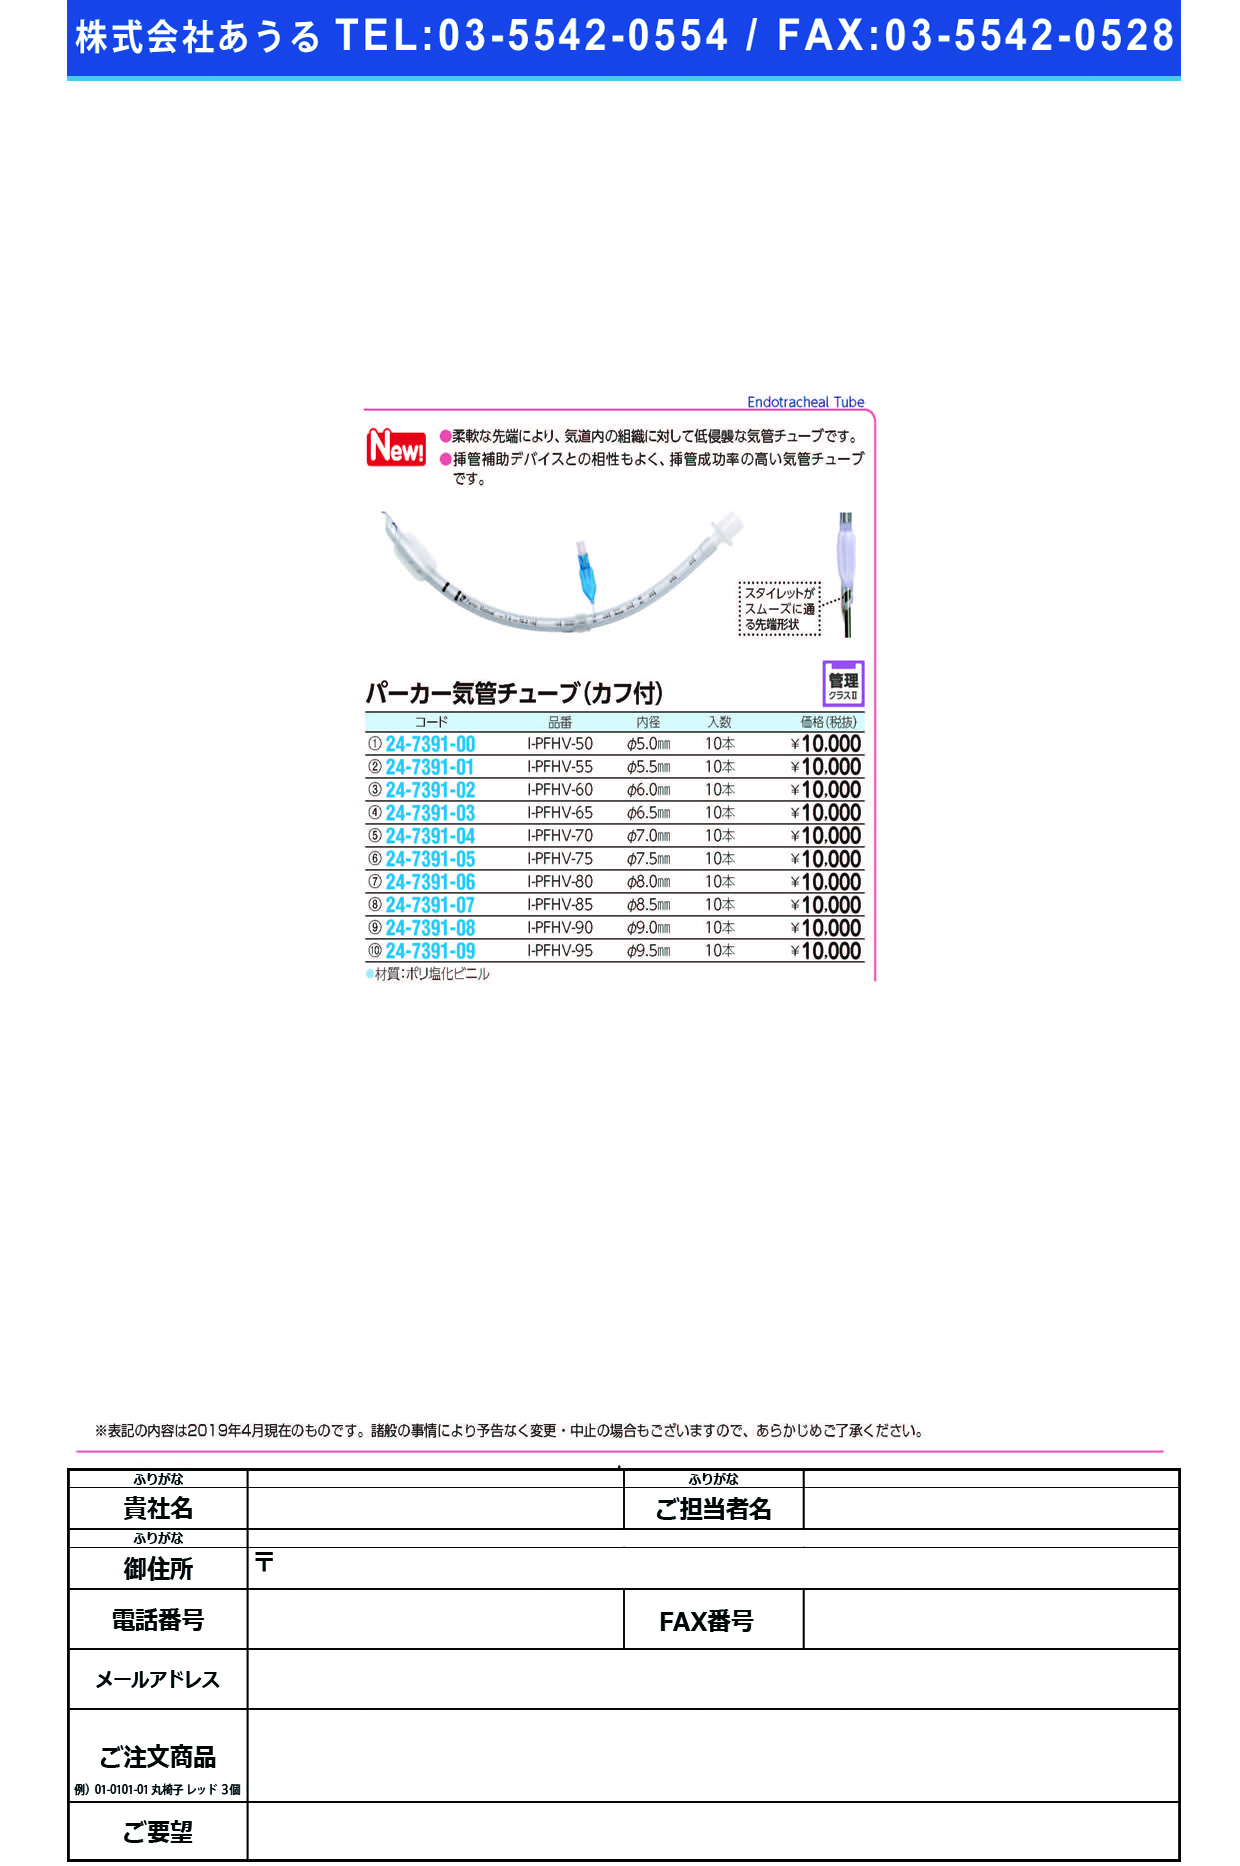 (24-7391-00)パーカー気管チューブI-PFHV-50(5.0MM)10ﾎﾝ ﾊﾟｰｶｰｷｶﾝﾁｭｰﾌﾞ(日本メディカルネクスト)【1箱単位】【2019年カタログ商品】